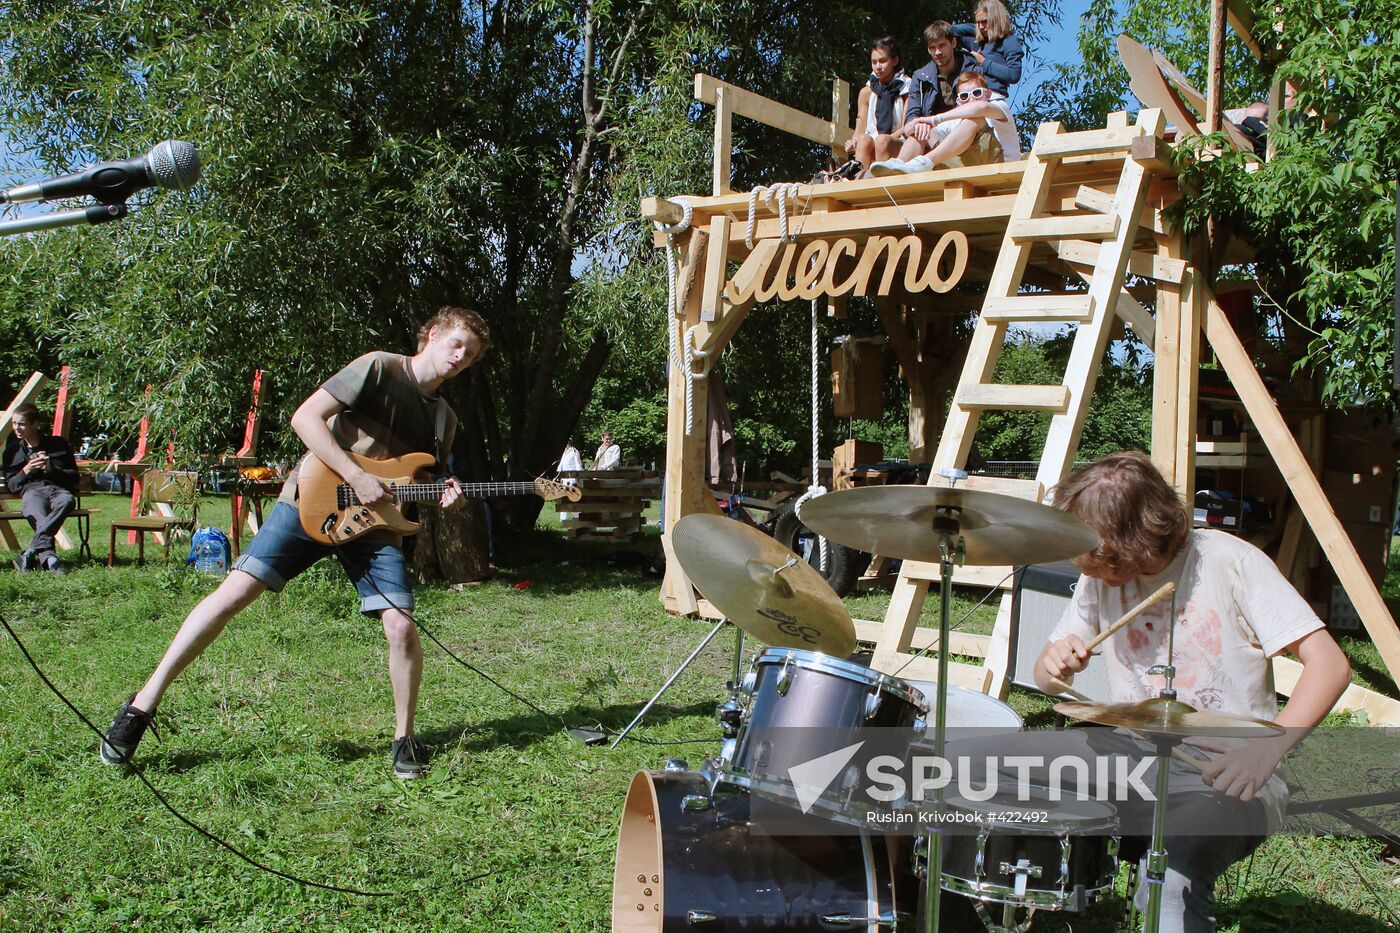 Kolomenskoye Park hosts Afisha Picnic Festival